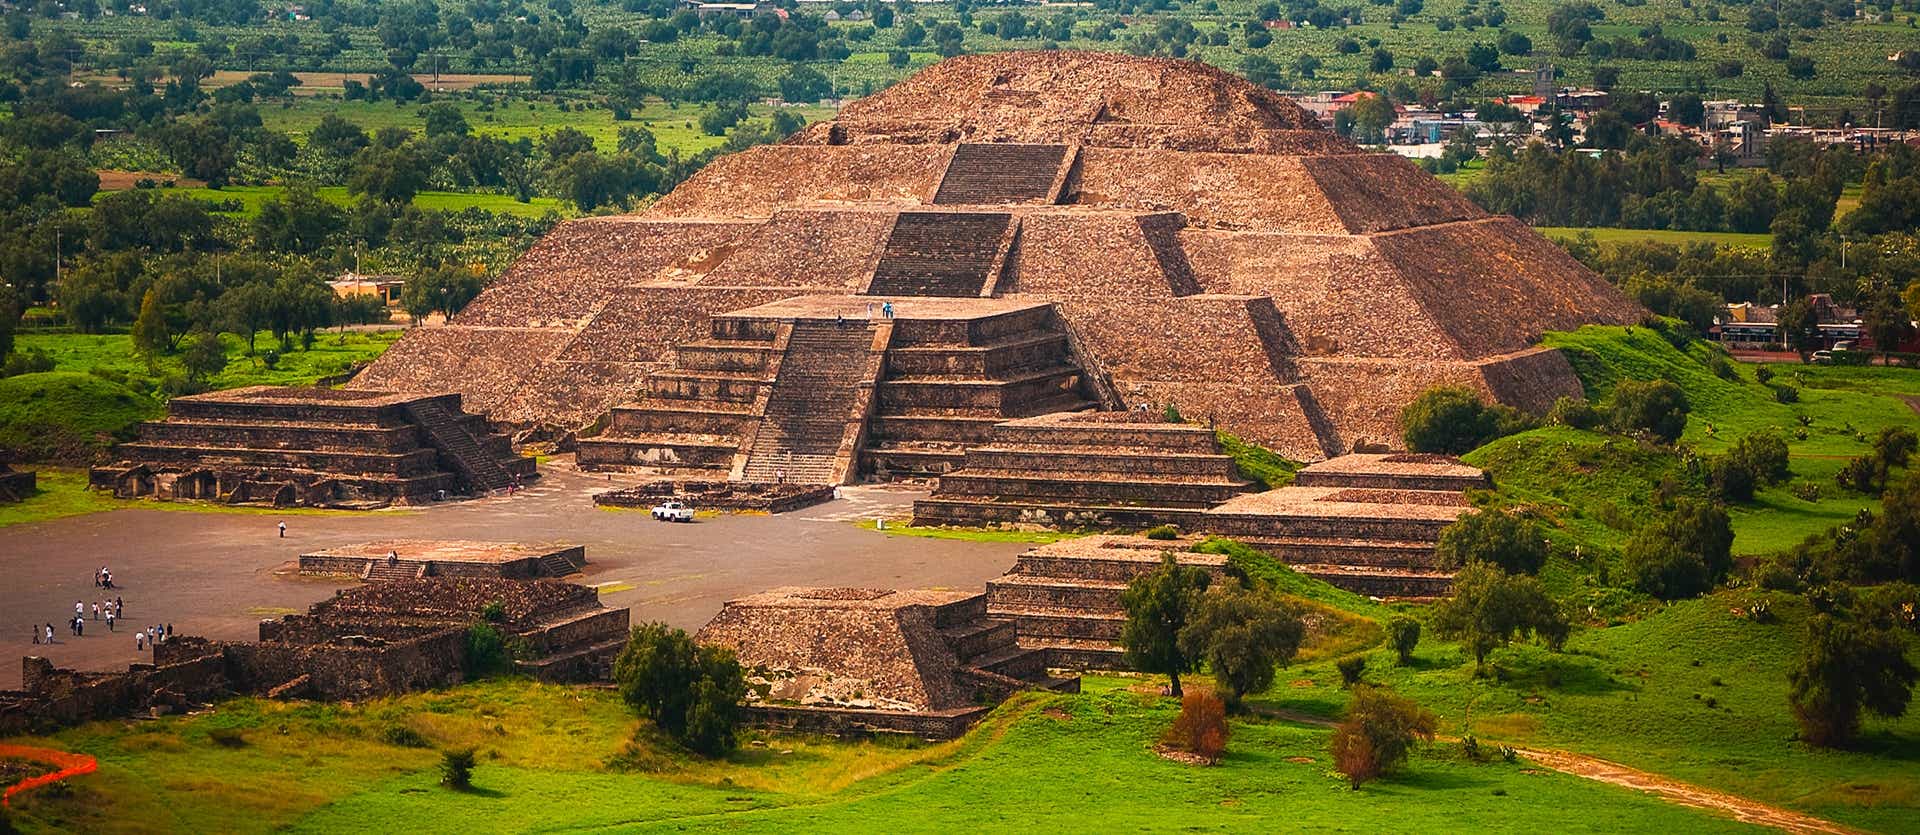 Teotihuacan <span class="iconos separador"></span> Mexico